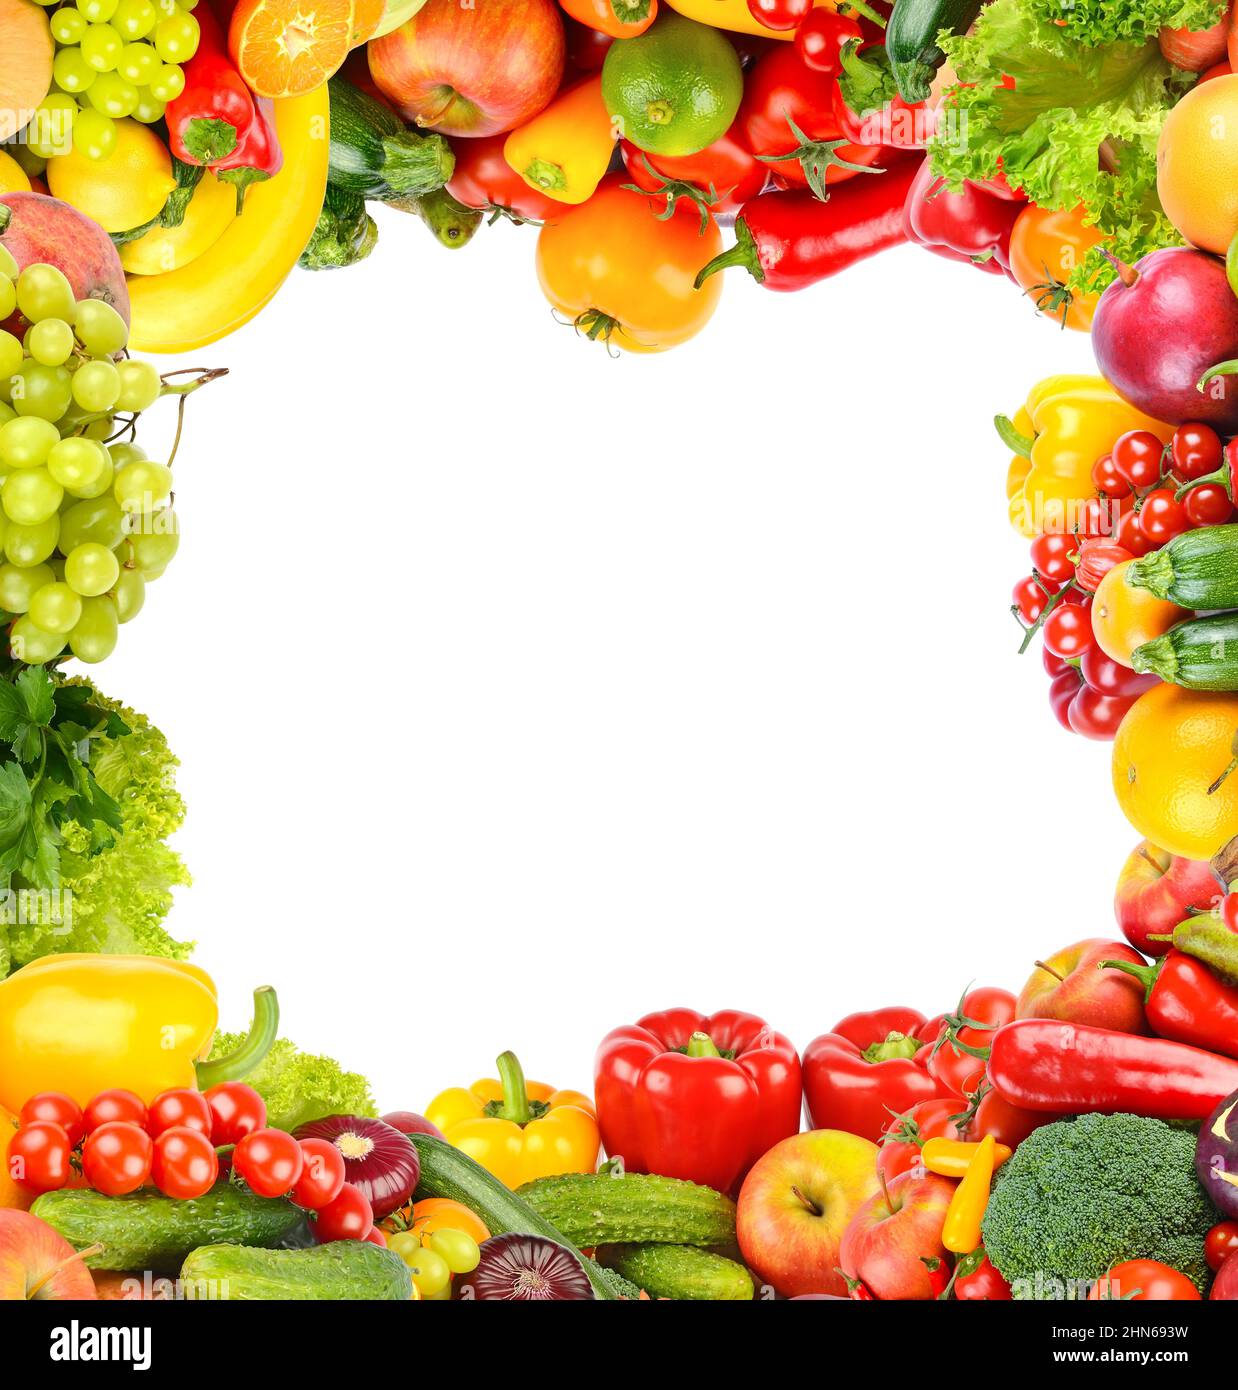 Fond carré de légumes frais et de fruits sous forme de cadre large. Isolé sur blanc. Banque D'Images